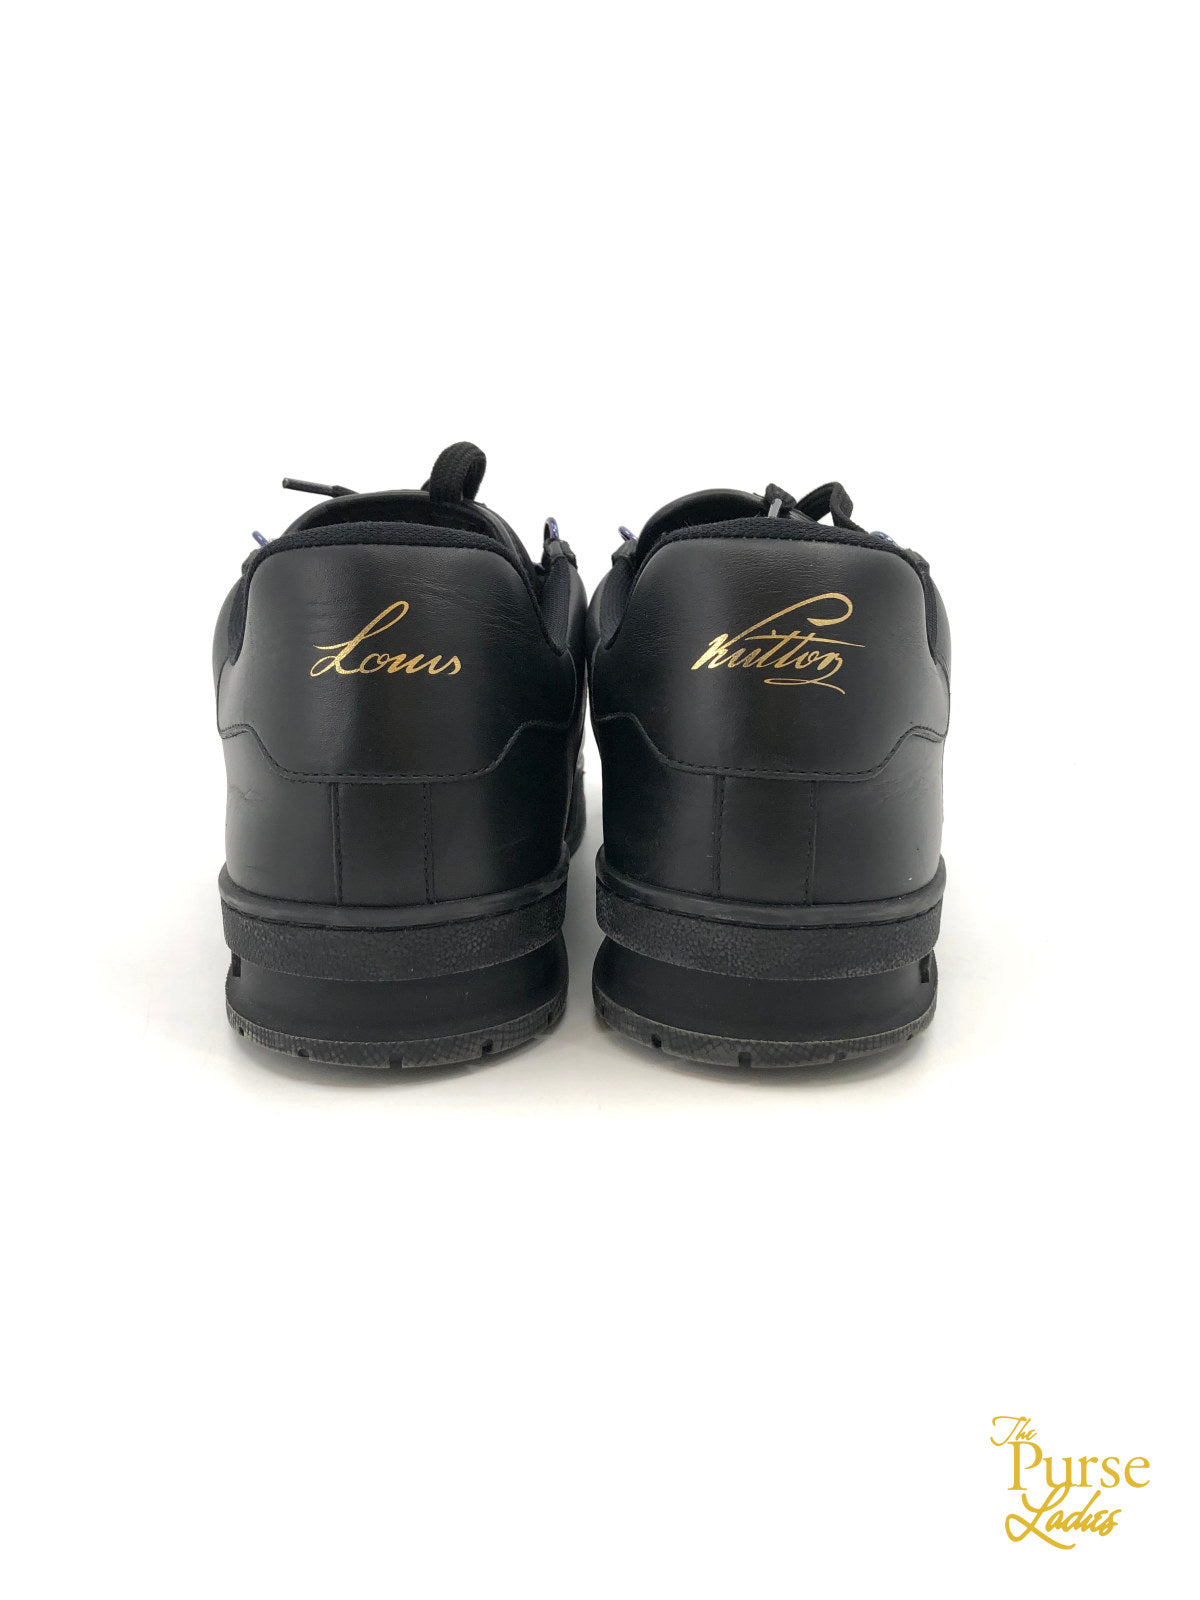 LOUIS VUITTON LV Trainer Sneaker Black. Size 9